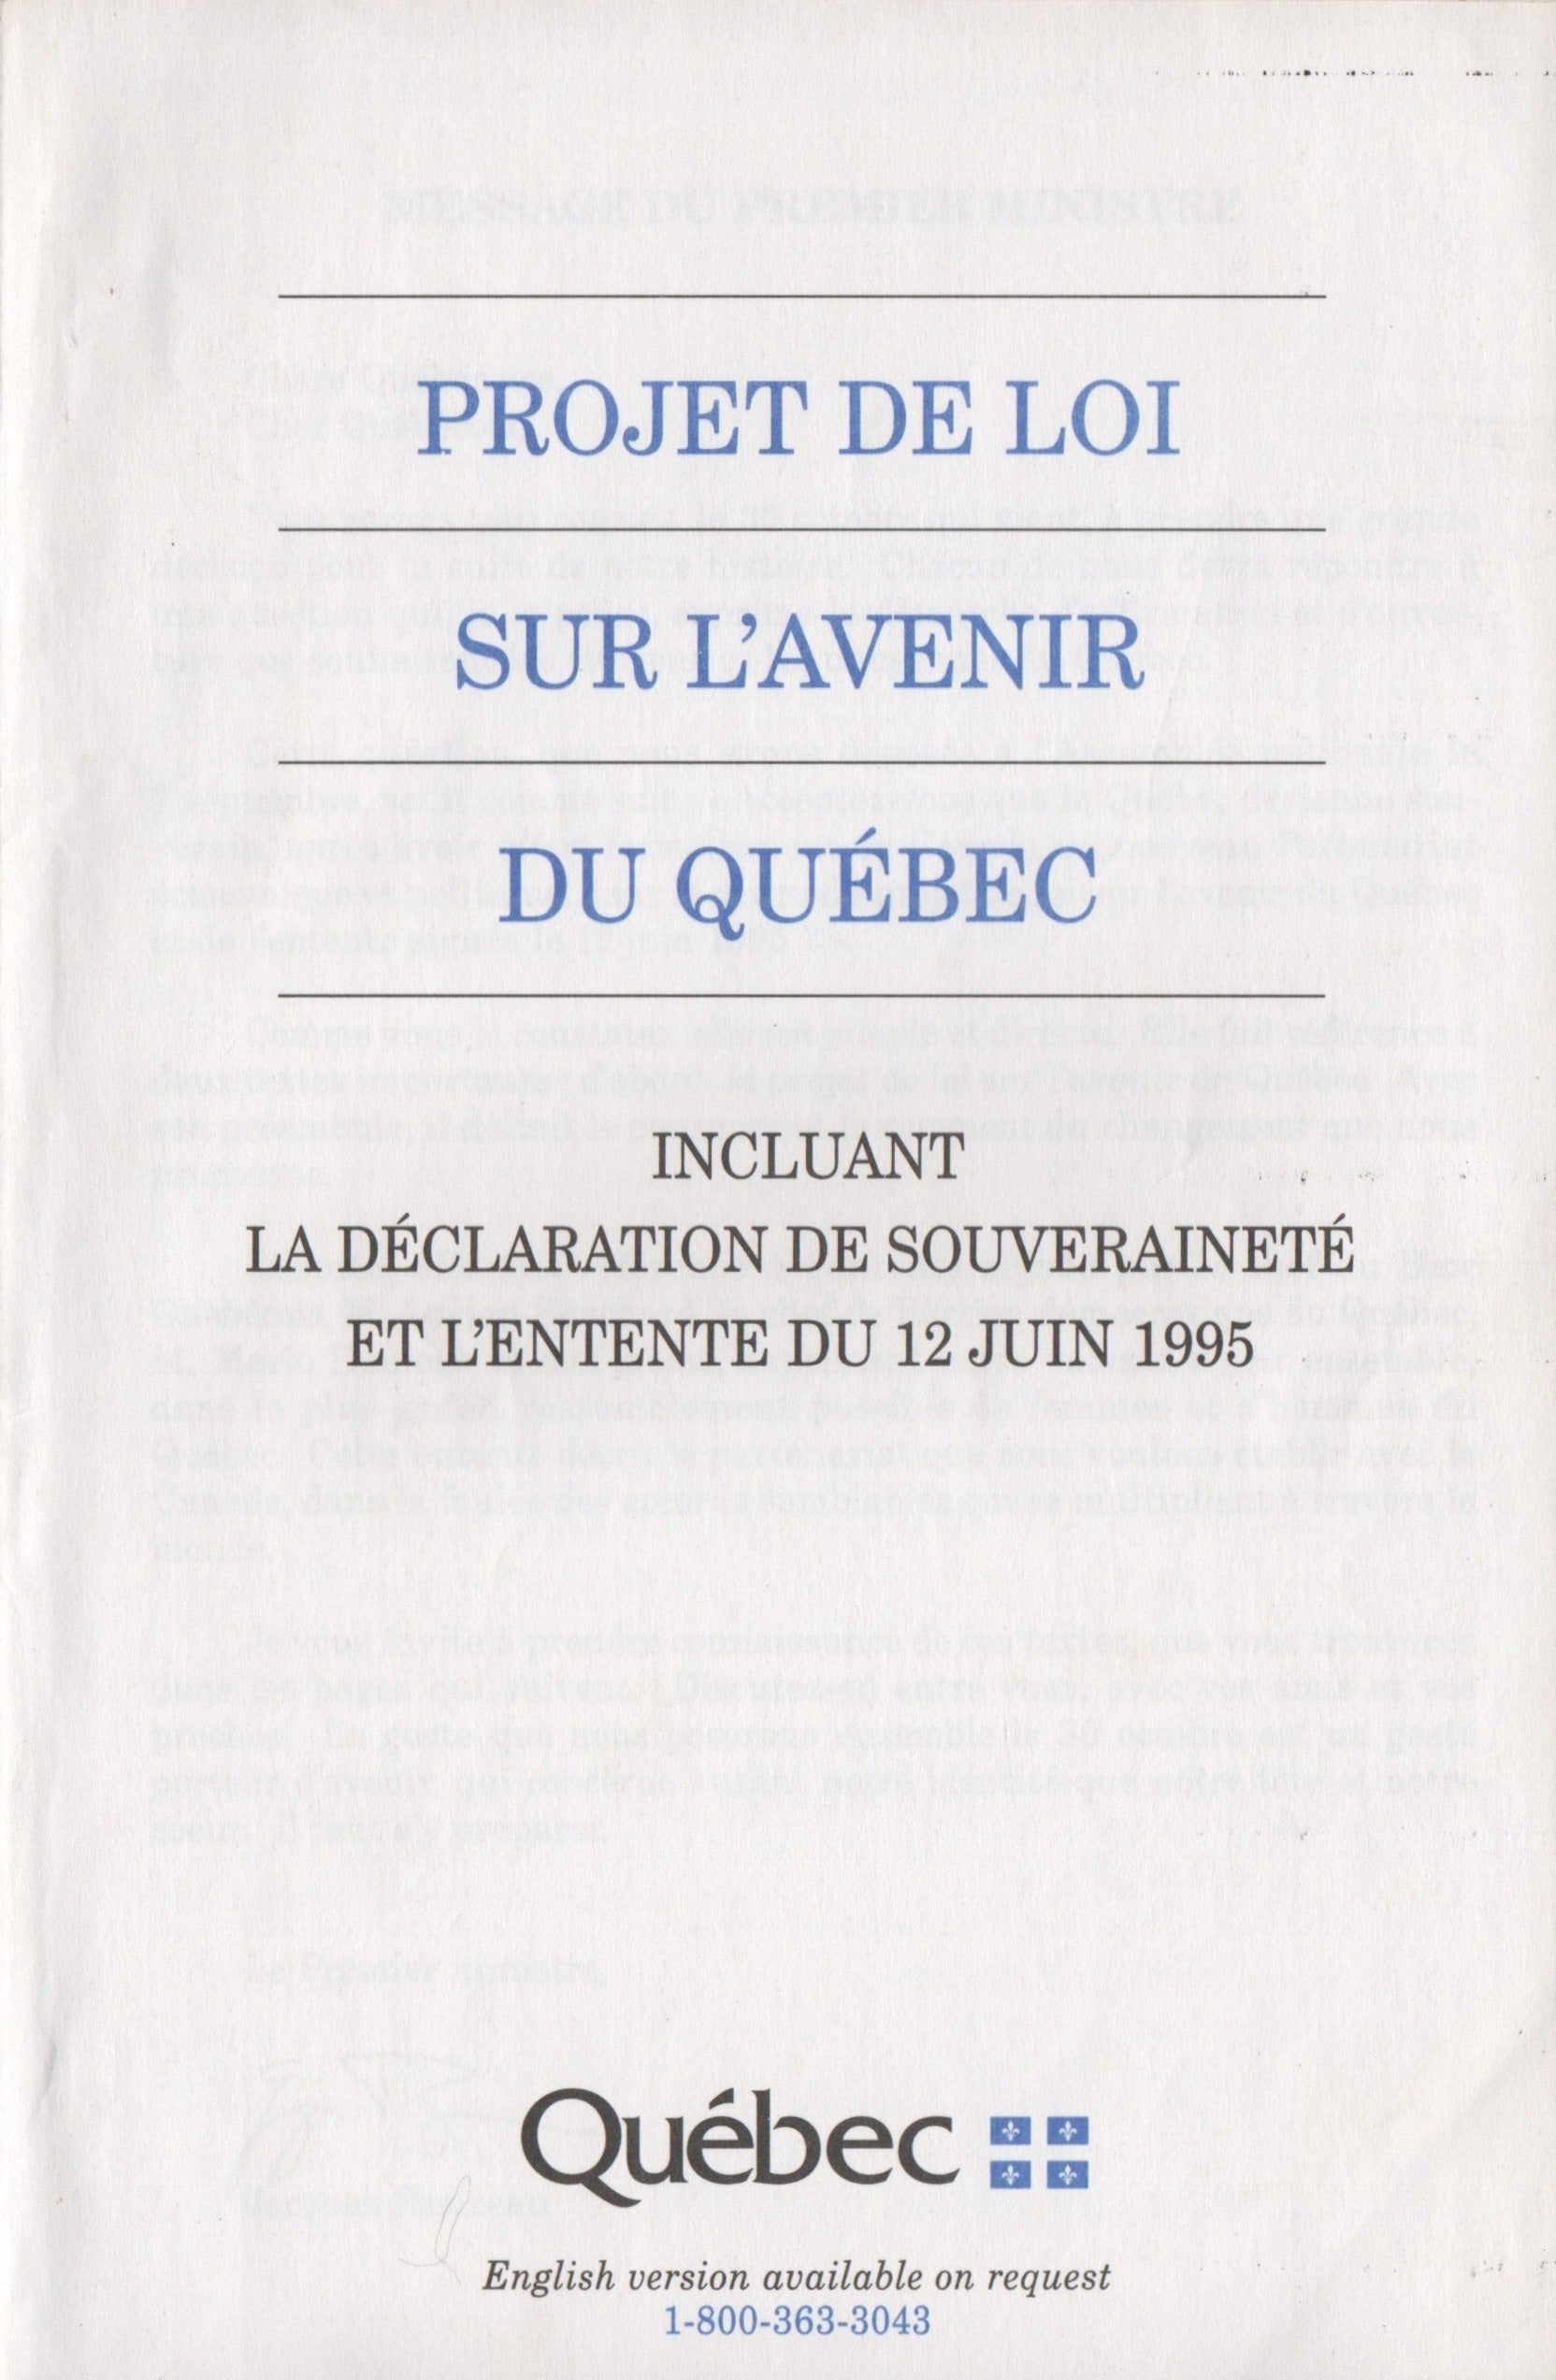 COLLECTIF. Projet de loi sur l'avenir du Québec - Incluant la déclaration de souveraineté et l'entente du 12 juin 1995